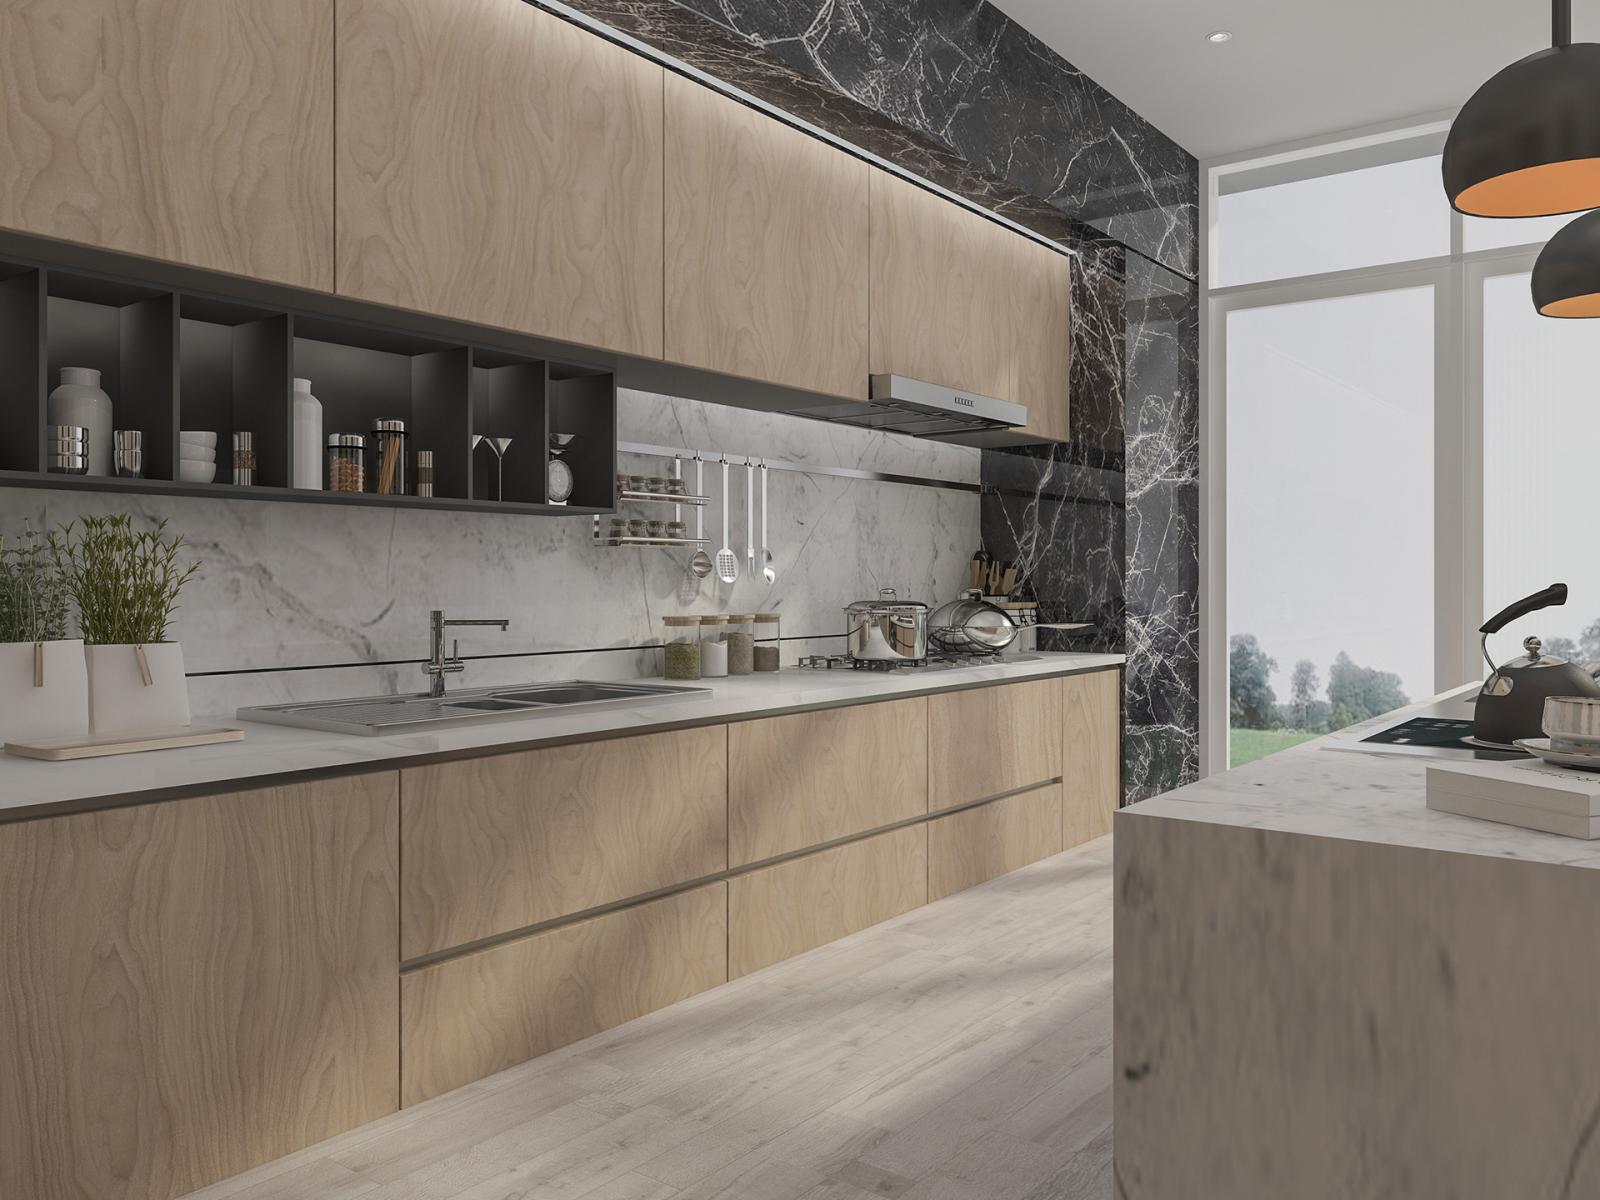 Đường viền bằng đá cẩm thạch màu đen bao quanh hệ tủ bếp bằng gỗ tạo cảm giác vững chãi, sang trọng hơn cho căn phòng.